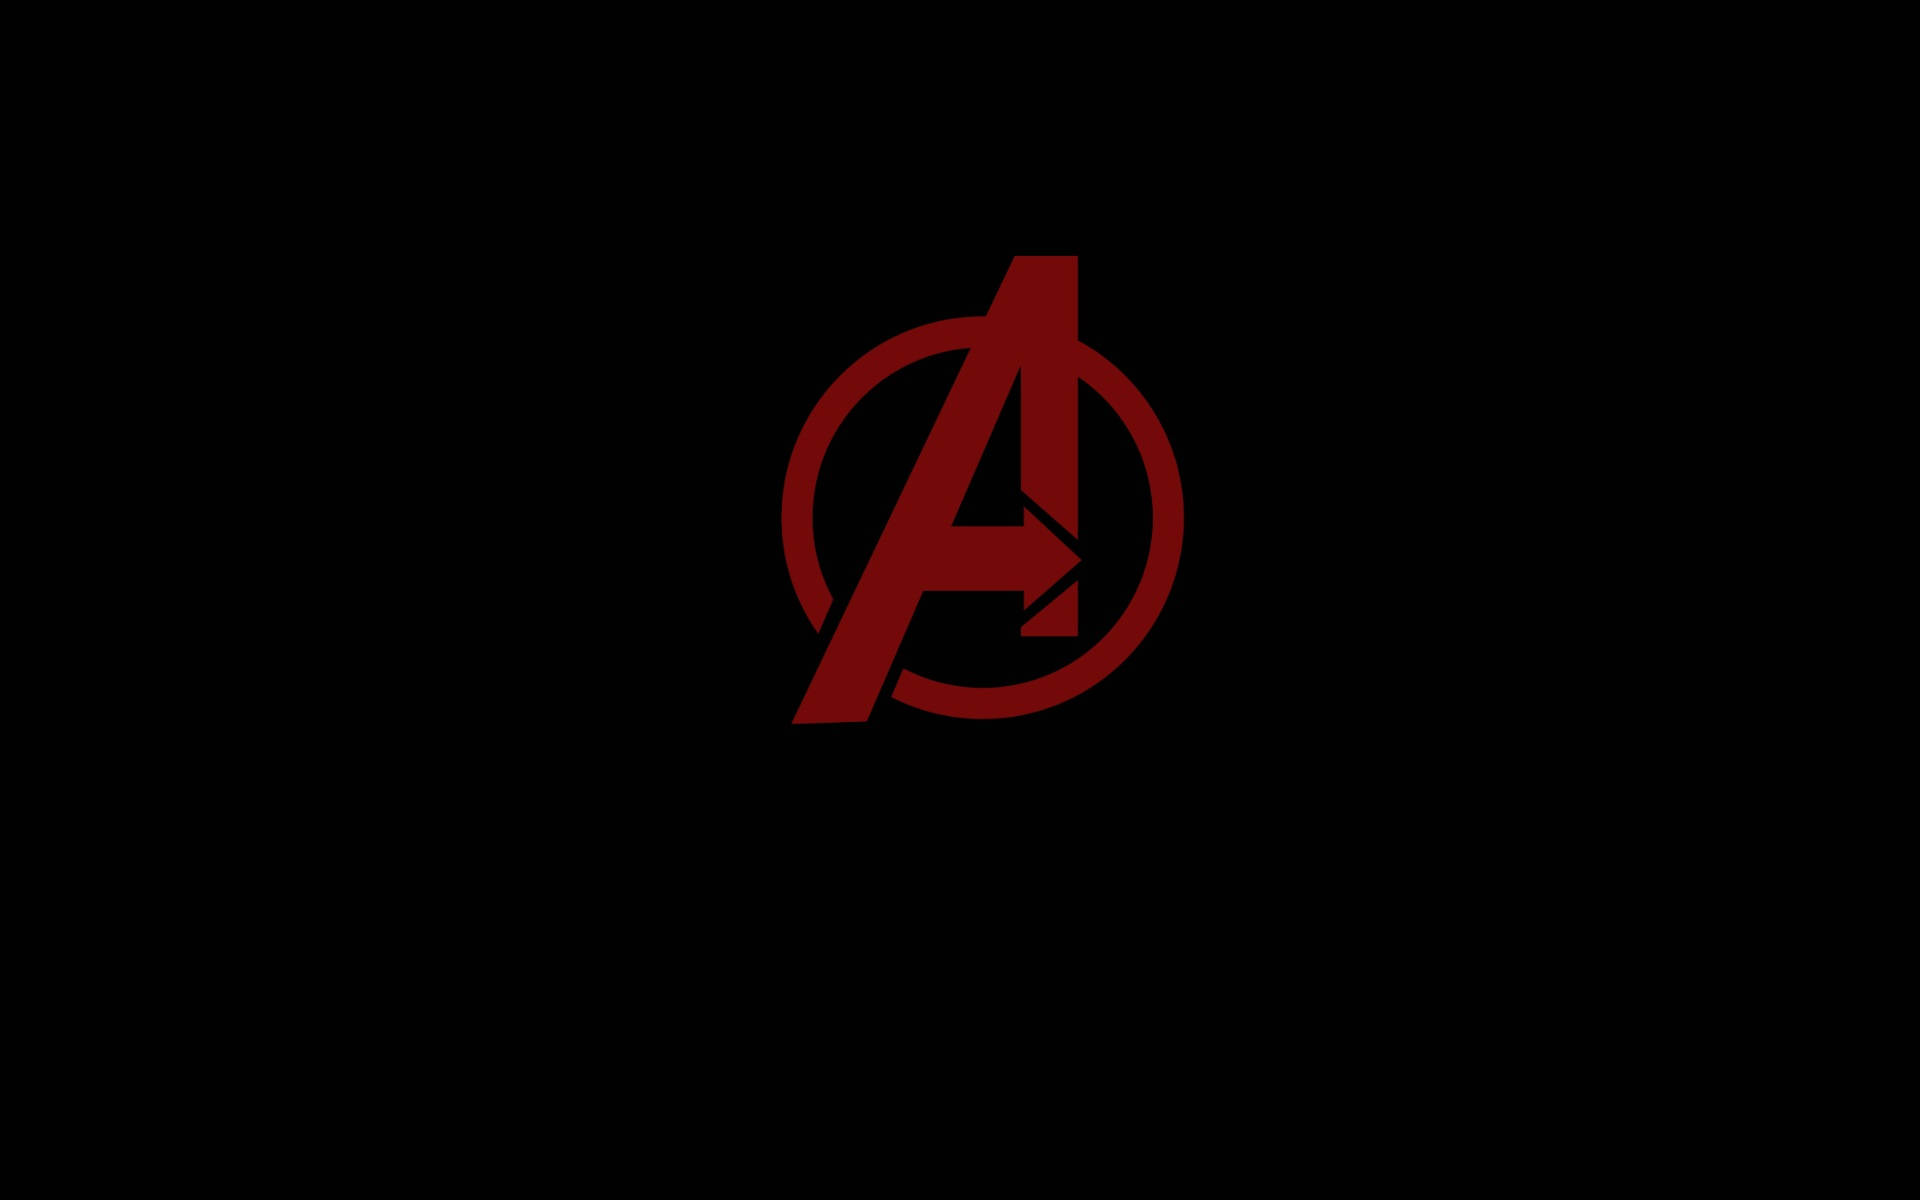 Simple Black Marvel Avengers Logo Red Aesthetic